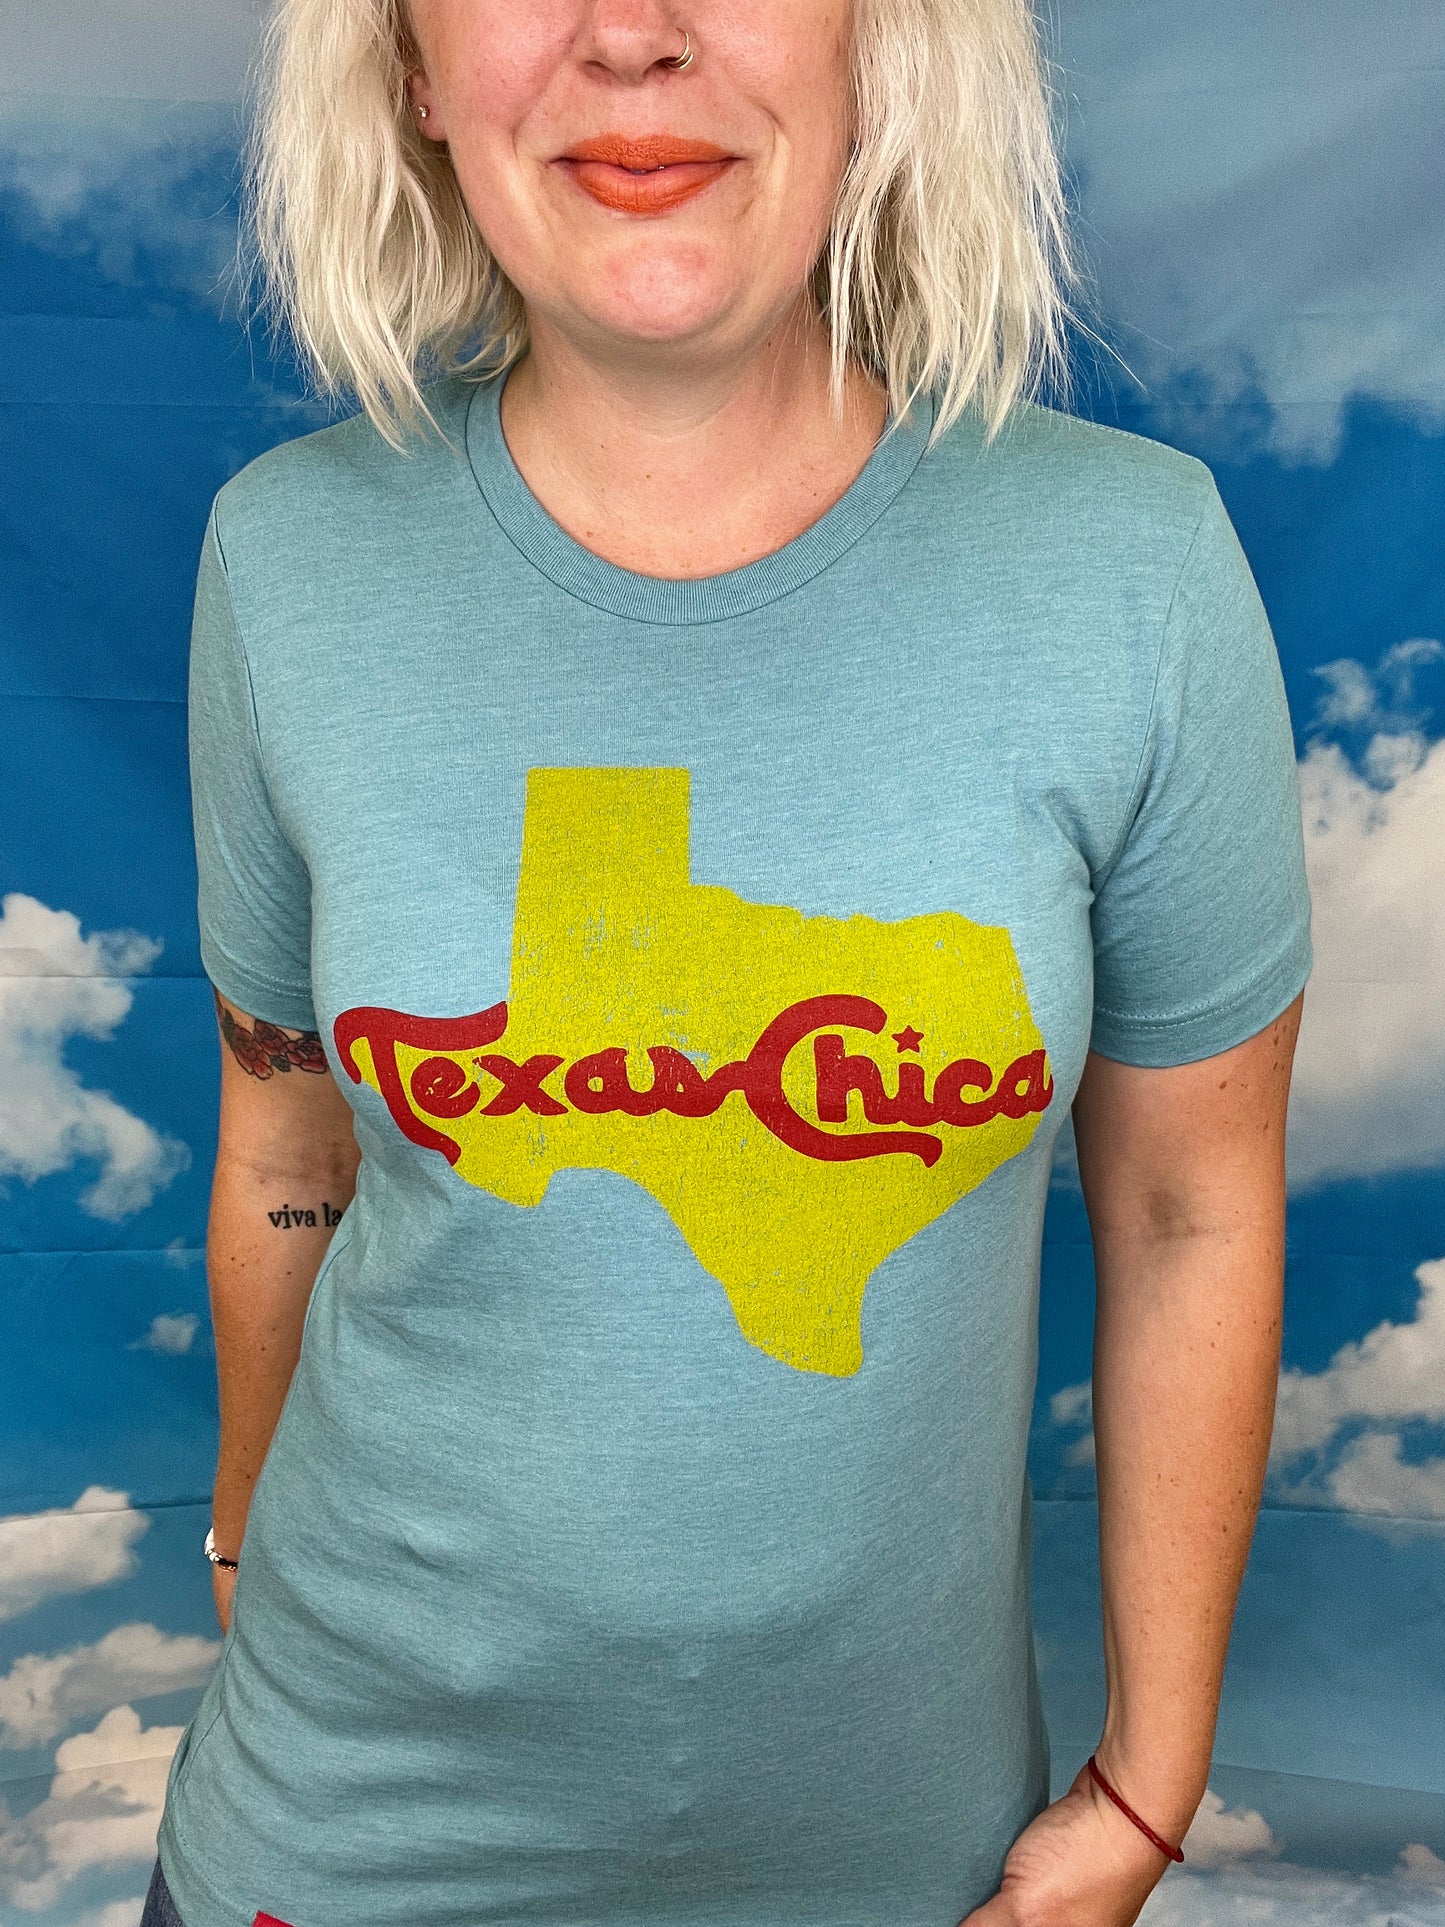 Last Call Texas Chica Tee [Azul]